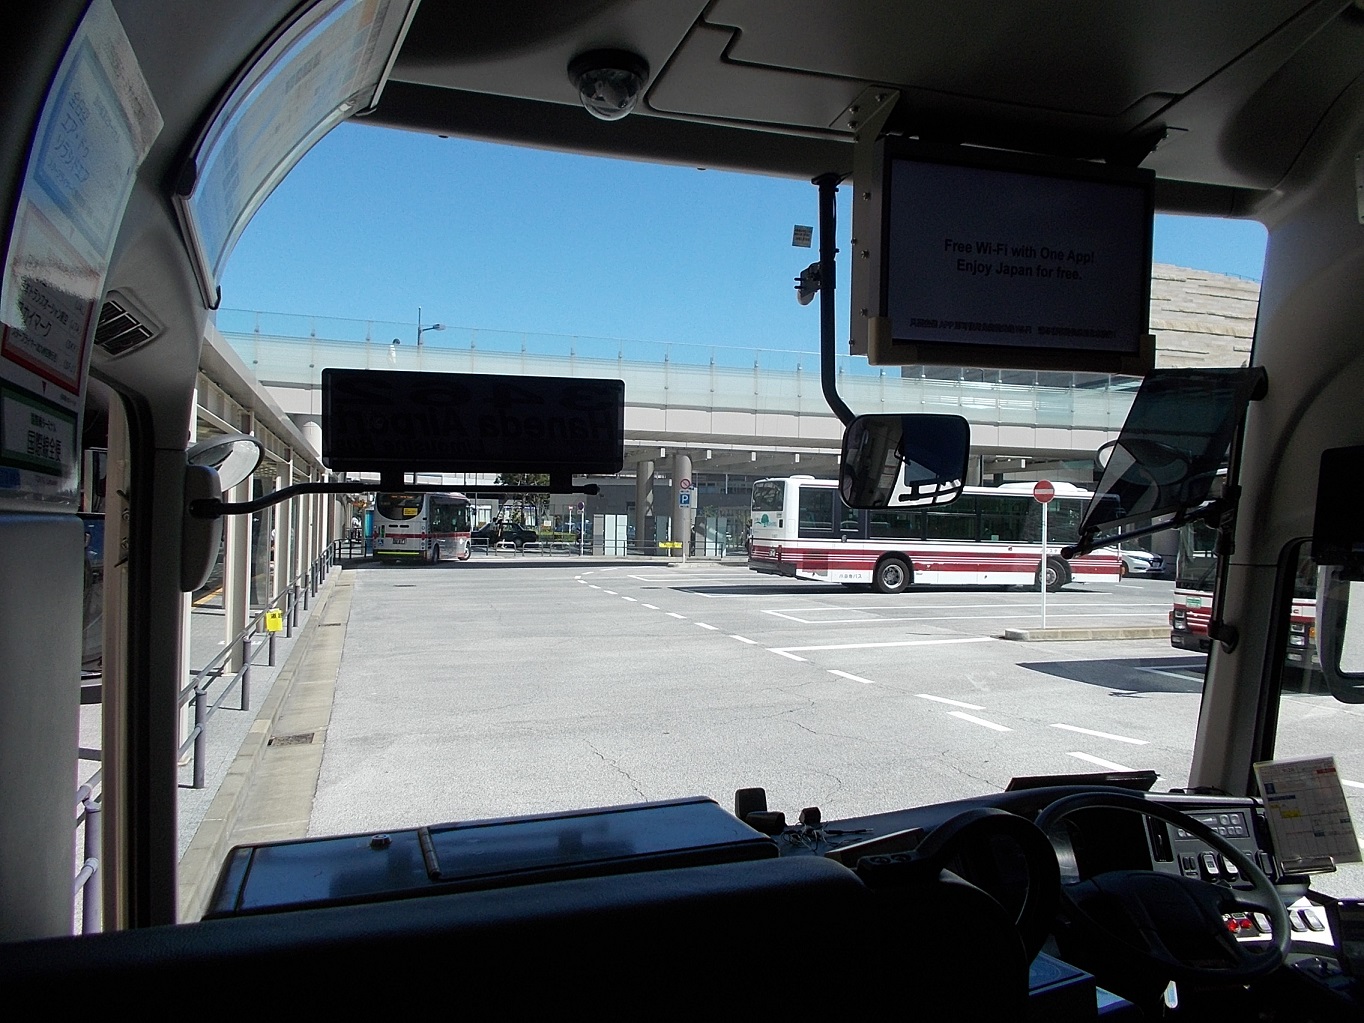 羽田国際空港へは二子玉川リムジンバス利用 17 9 18 ラスベガス ロサンゼルスの旅 楽天ブログ